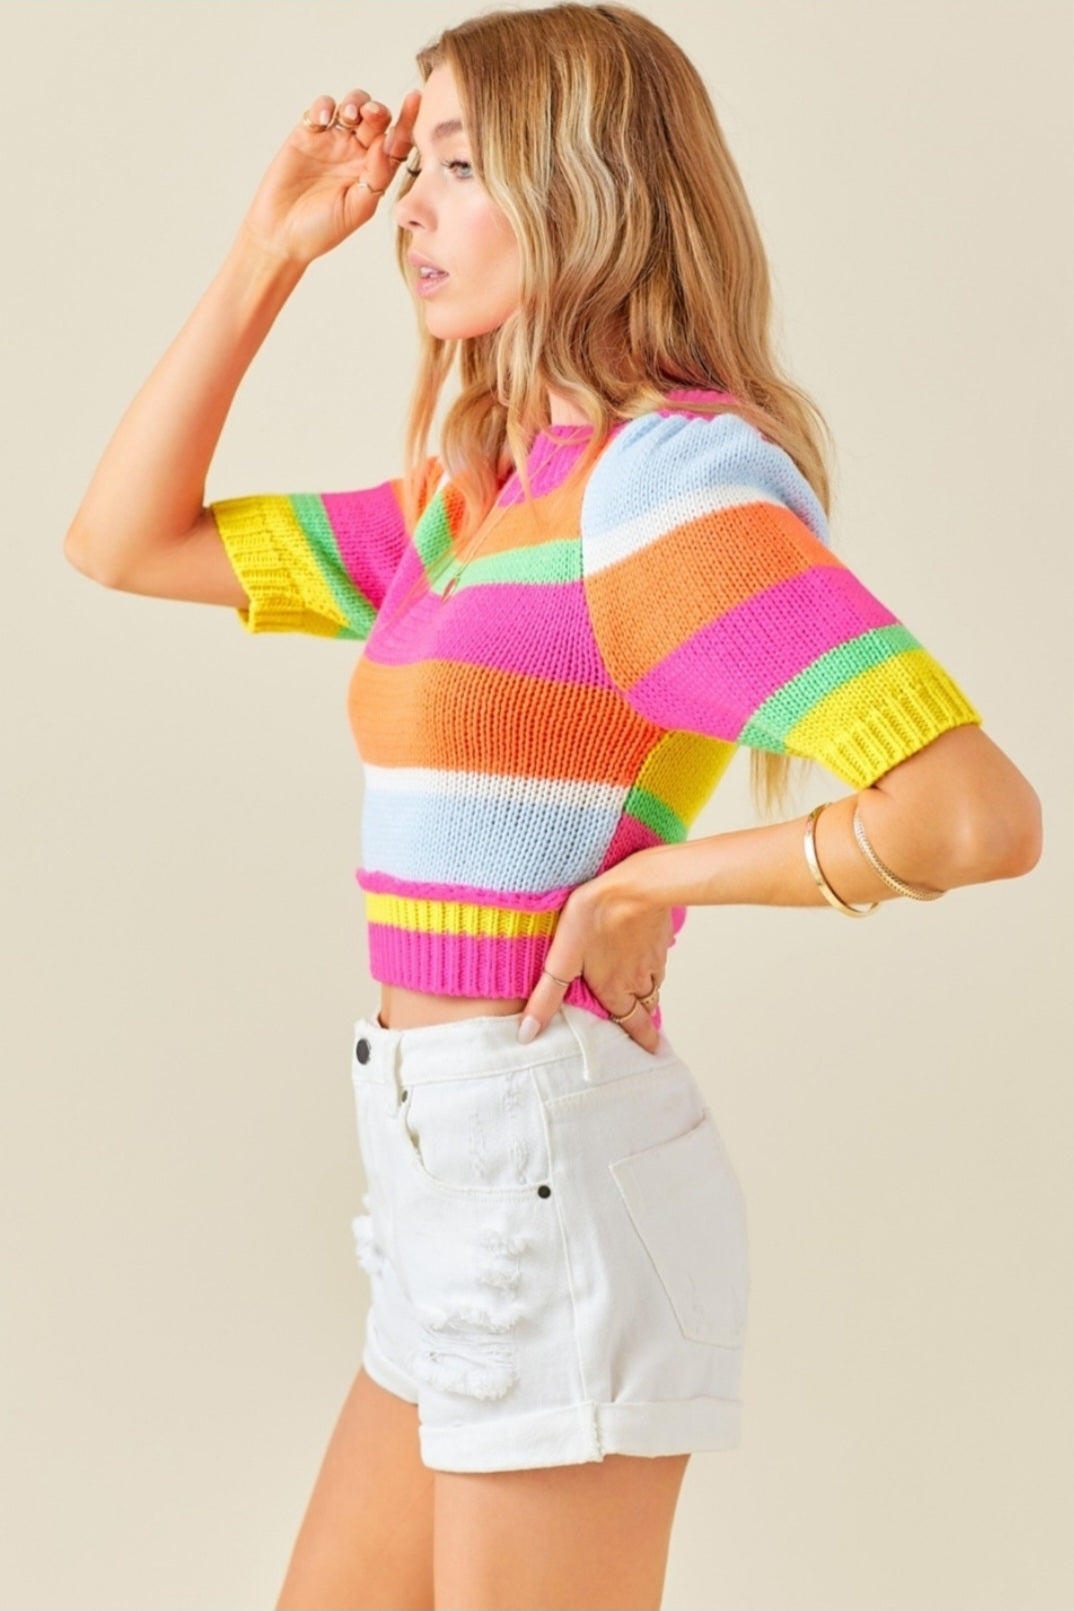 Tricot Striped crop sweater - multicolor